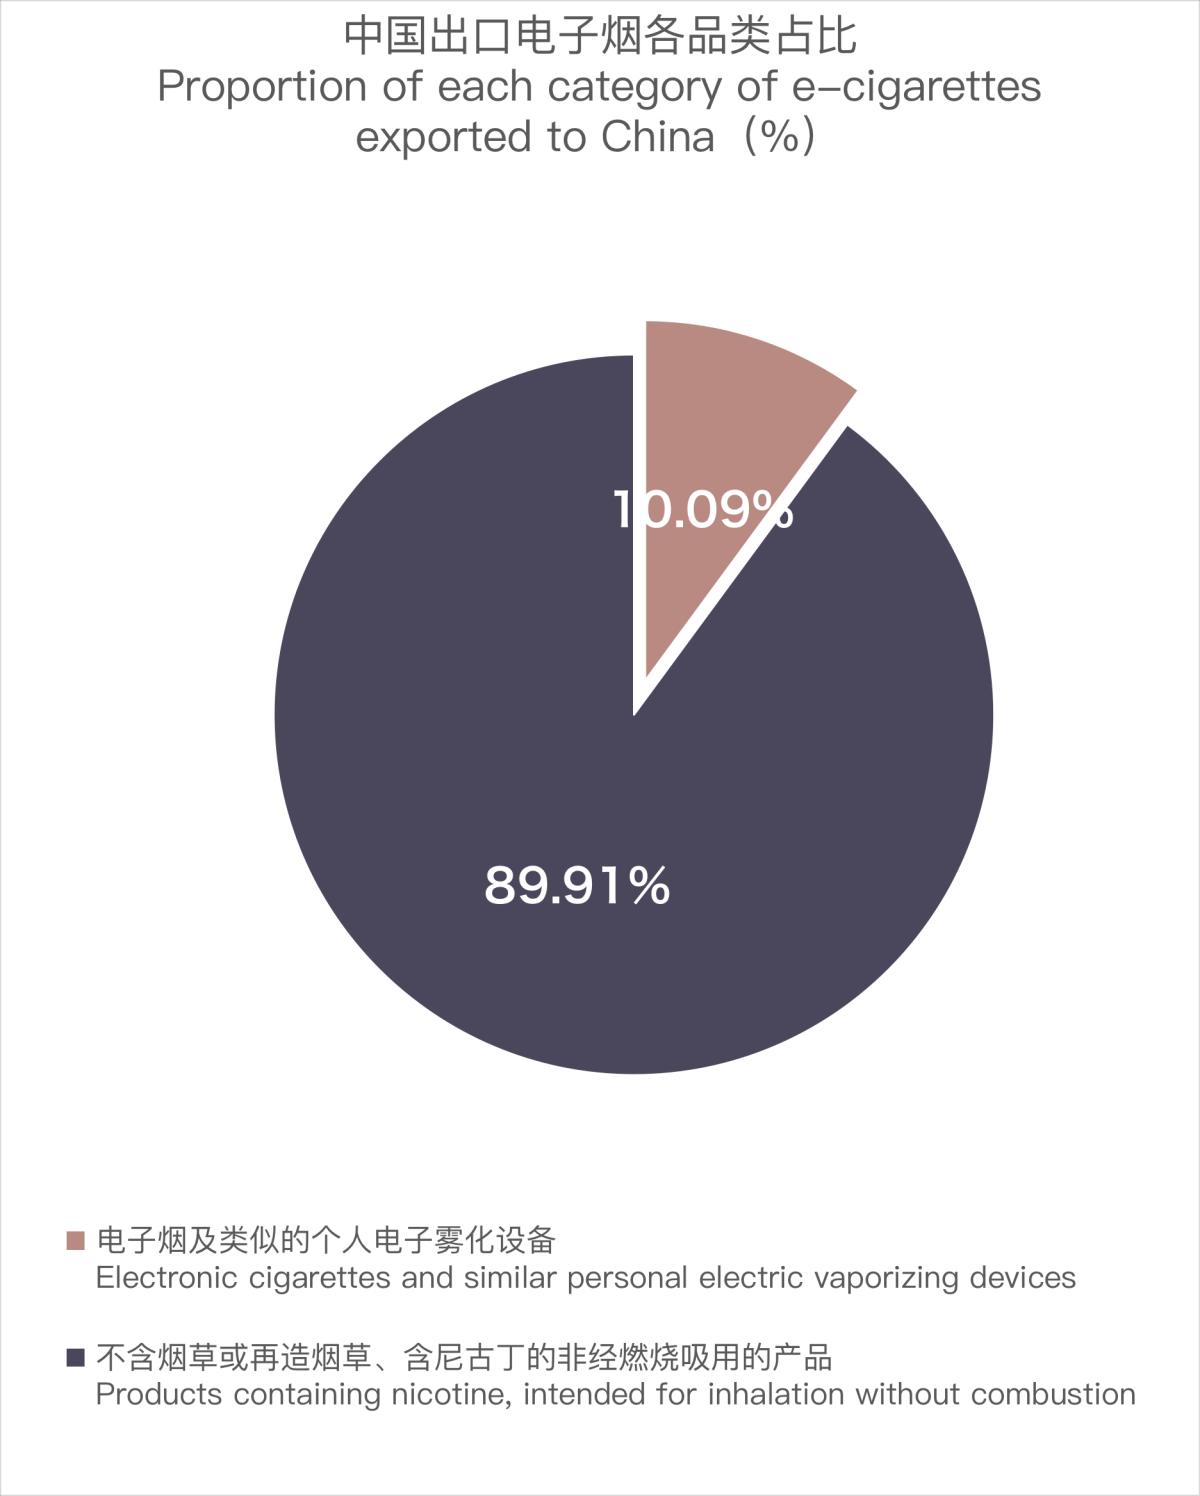 10月中国出口韩国电子烟约6927万美元 环比增长15.87%